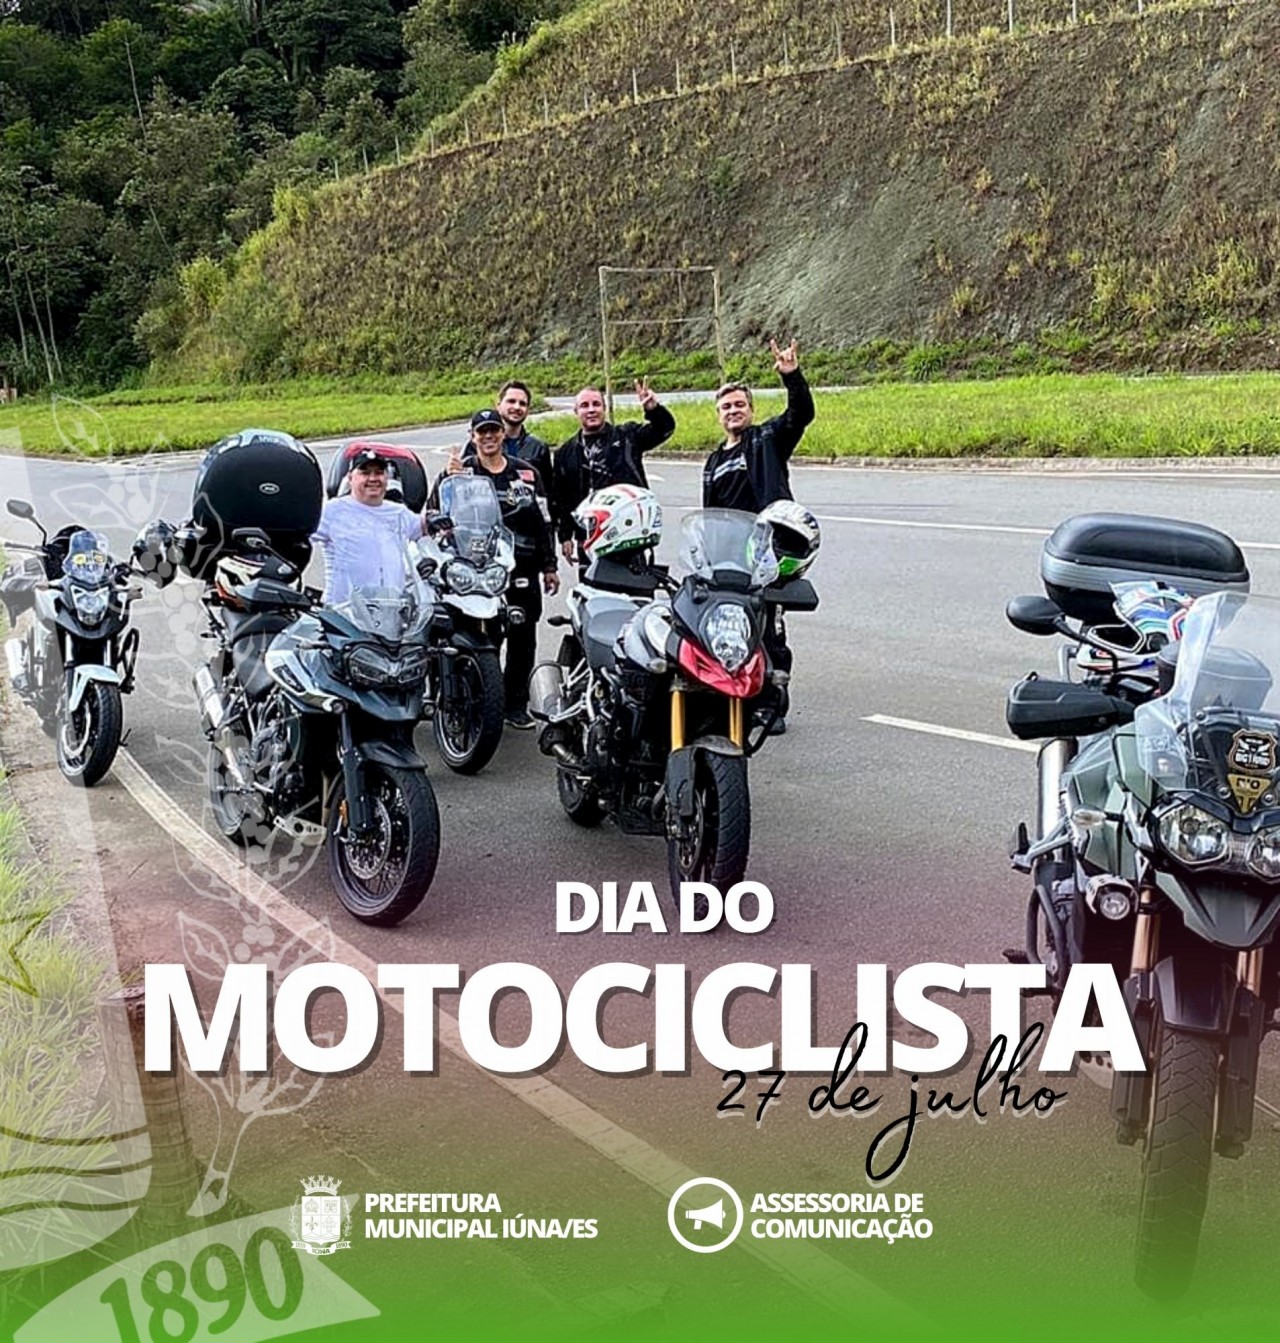 27 de Julho - Dia do Motociclista